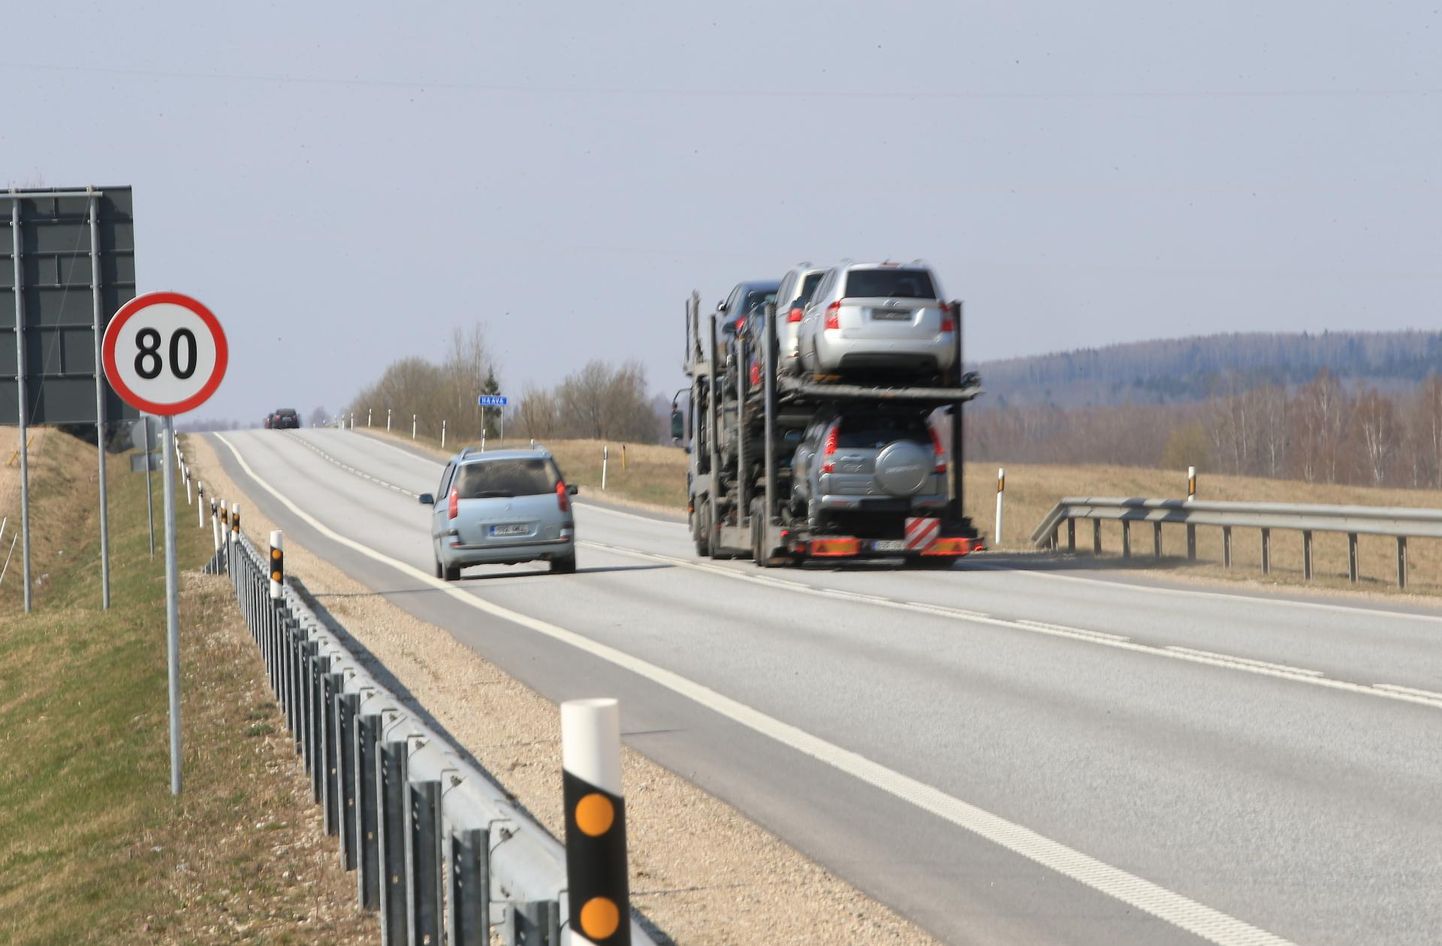 Liikluseeskiri on järgimiseks nii Eestis kui mujal riikides. Nii tasub arvestada, et seda eirates võib järgneda vastutus.